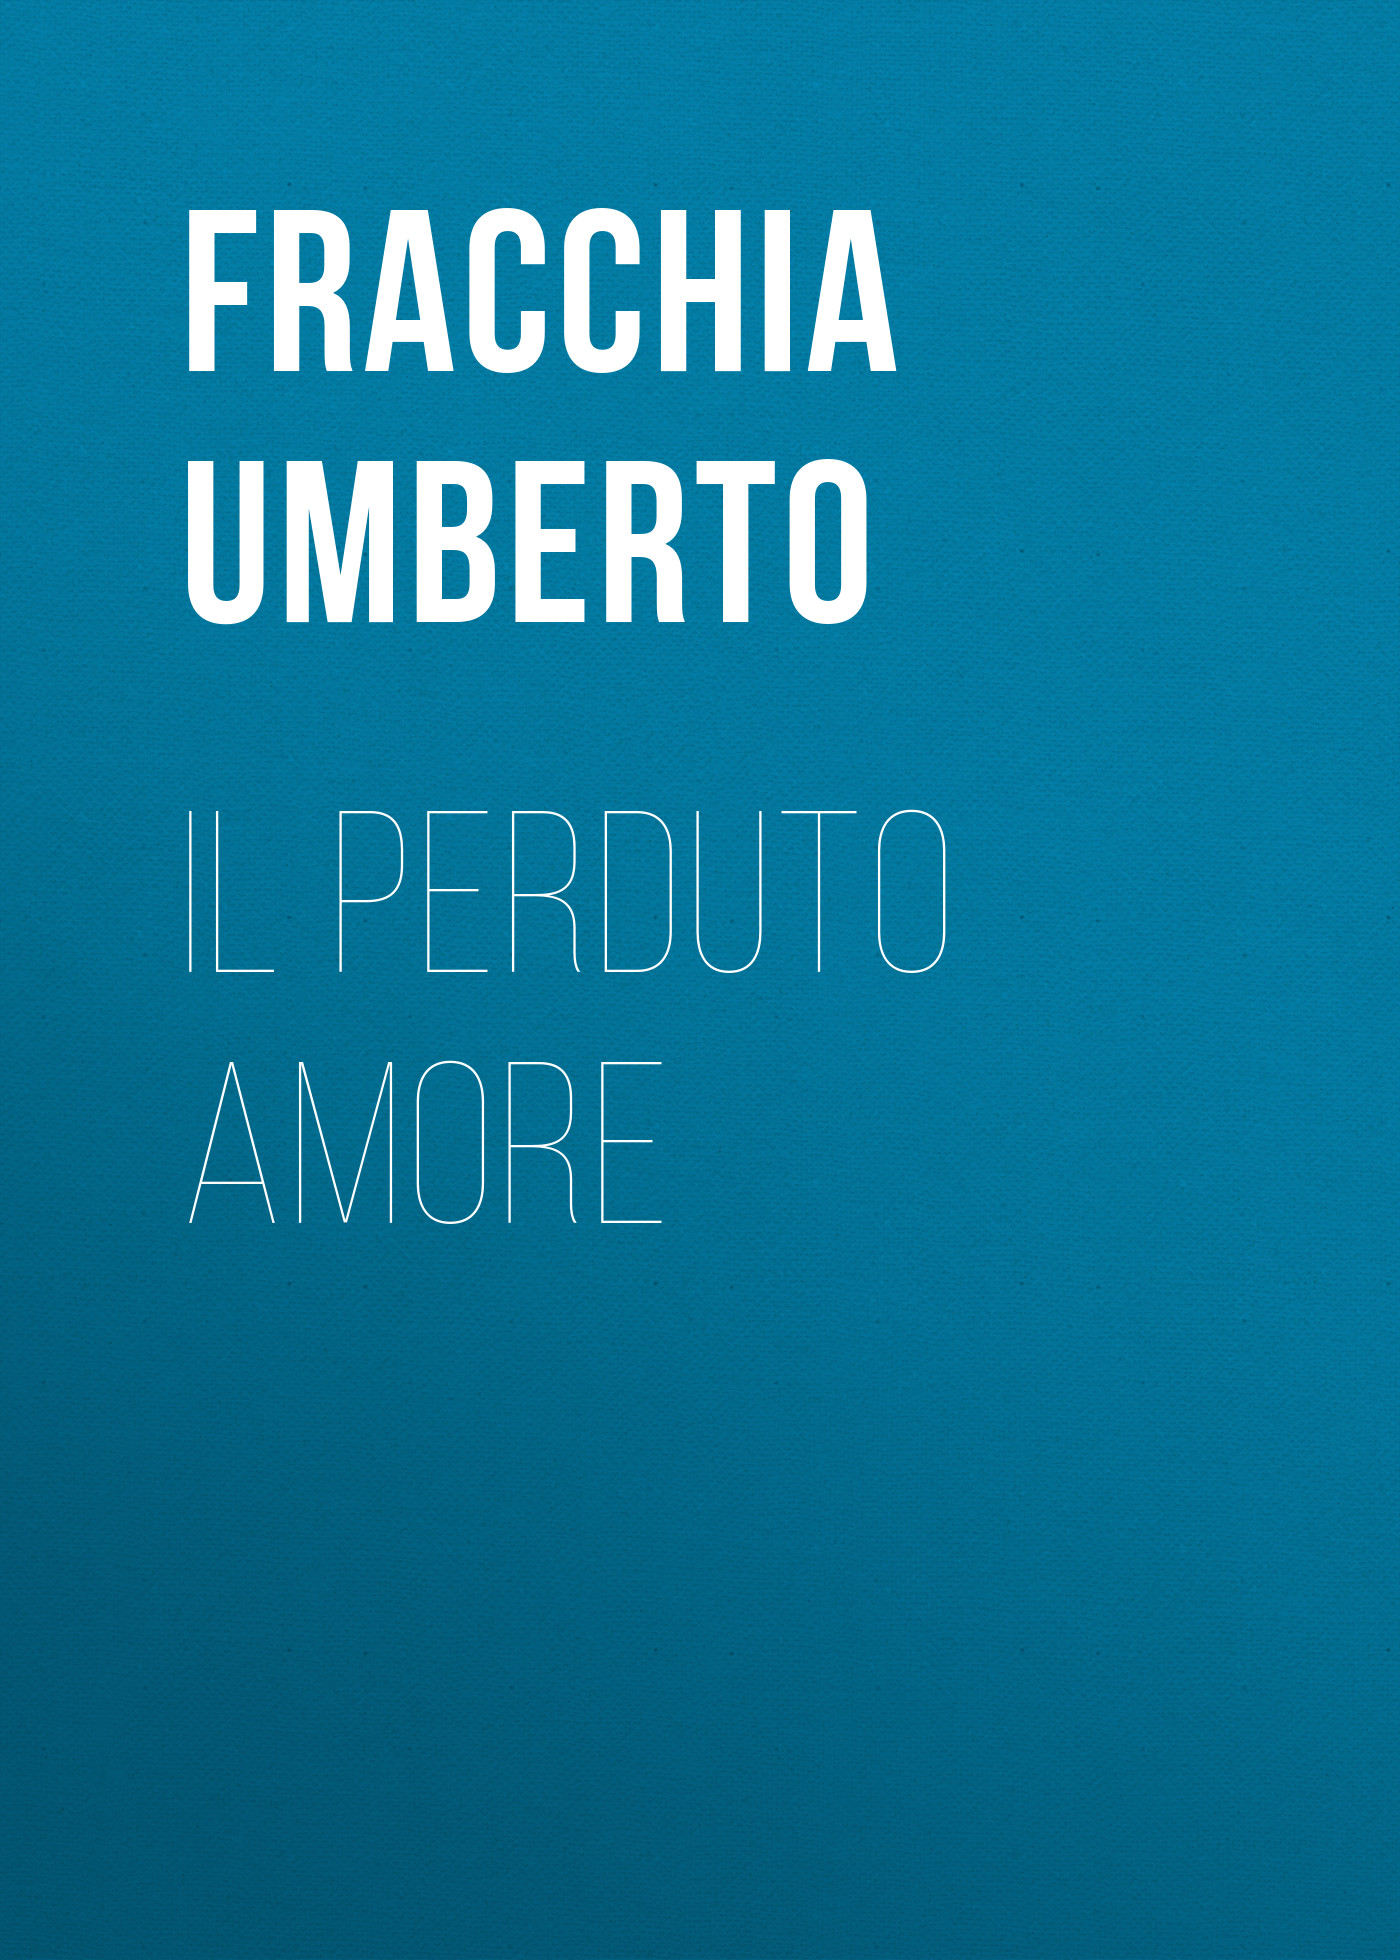 Книга Il perduto amore из серии , созданная Umberto Fracchia, может относится к жанру Зарубежная старинная литература, Зарубежная классика. Стоимость электронной книги Il perduto amore с идентификатором 24728593 составляет 0 руб.